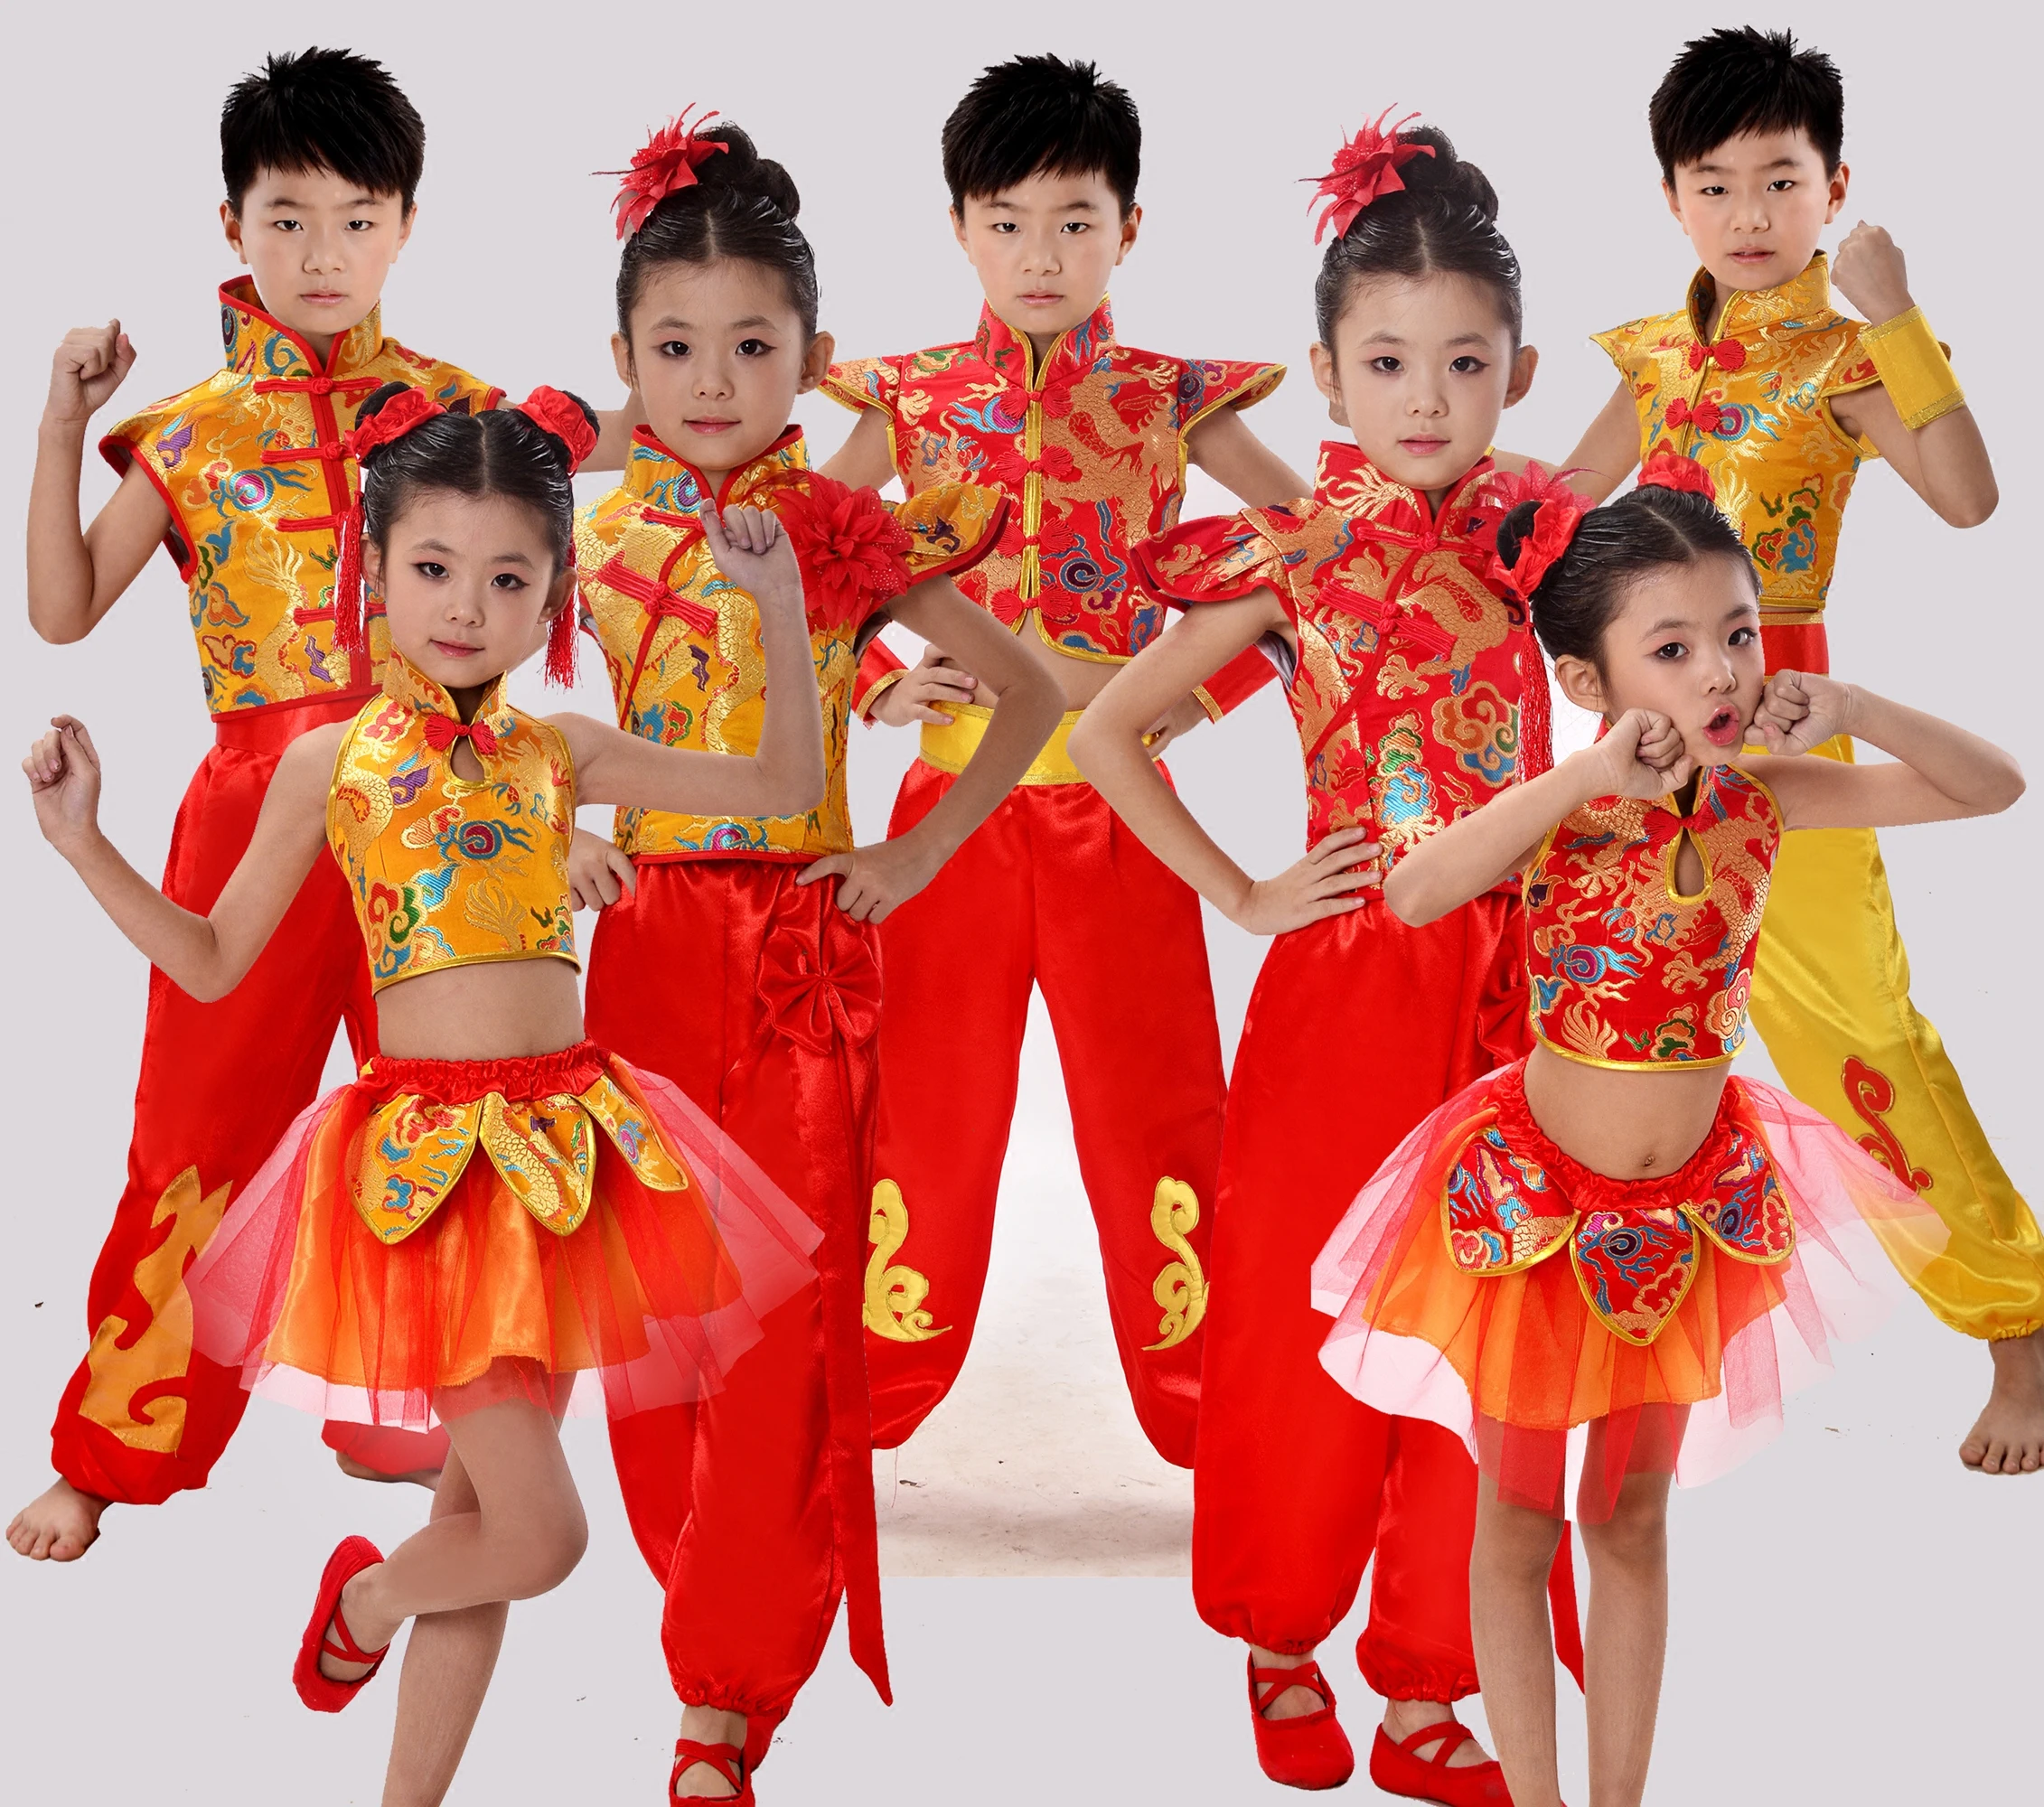 Китайский народный танцевальный костюм кунг-фу, танцевальный костюм для мальчиков и девочек, костюм янгко, традиционная танцевальная одежда для фанатов, Прямая поставка